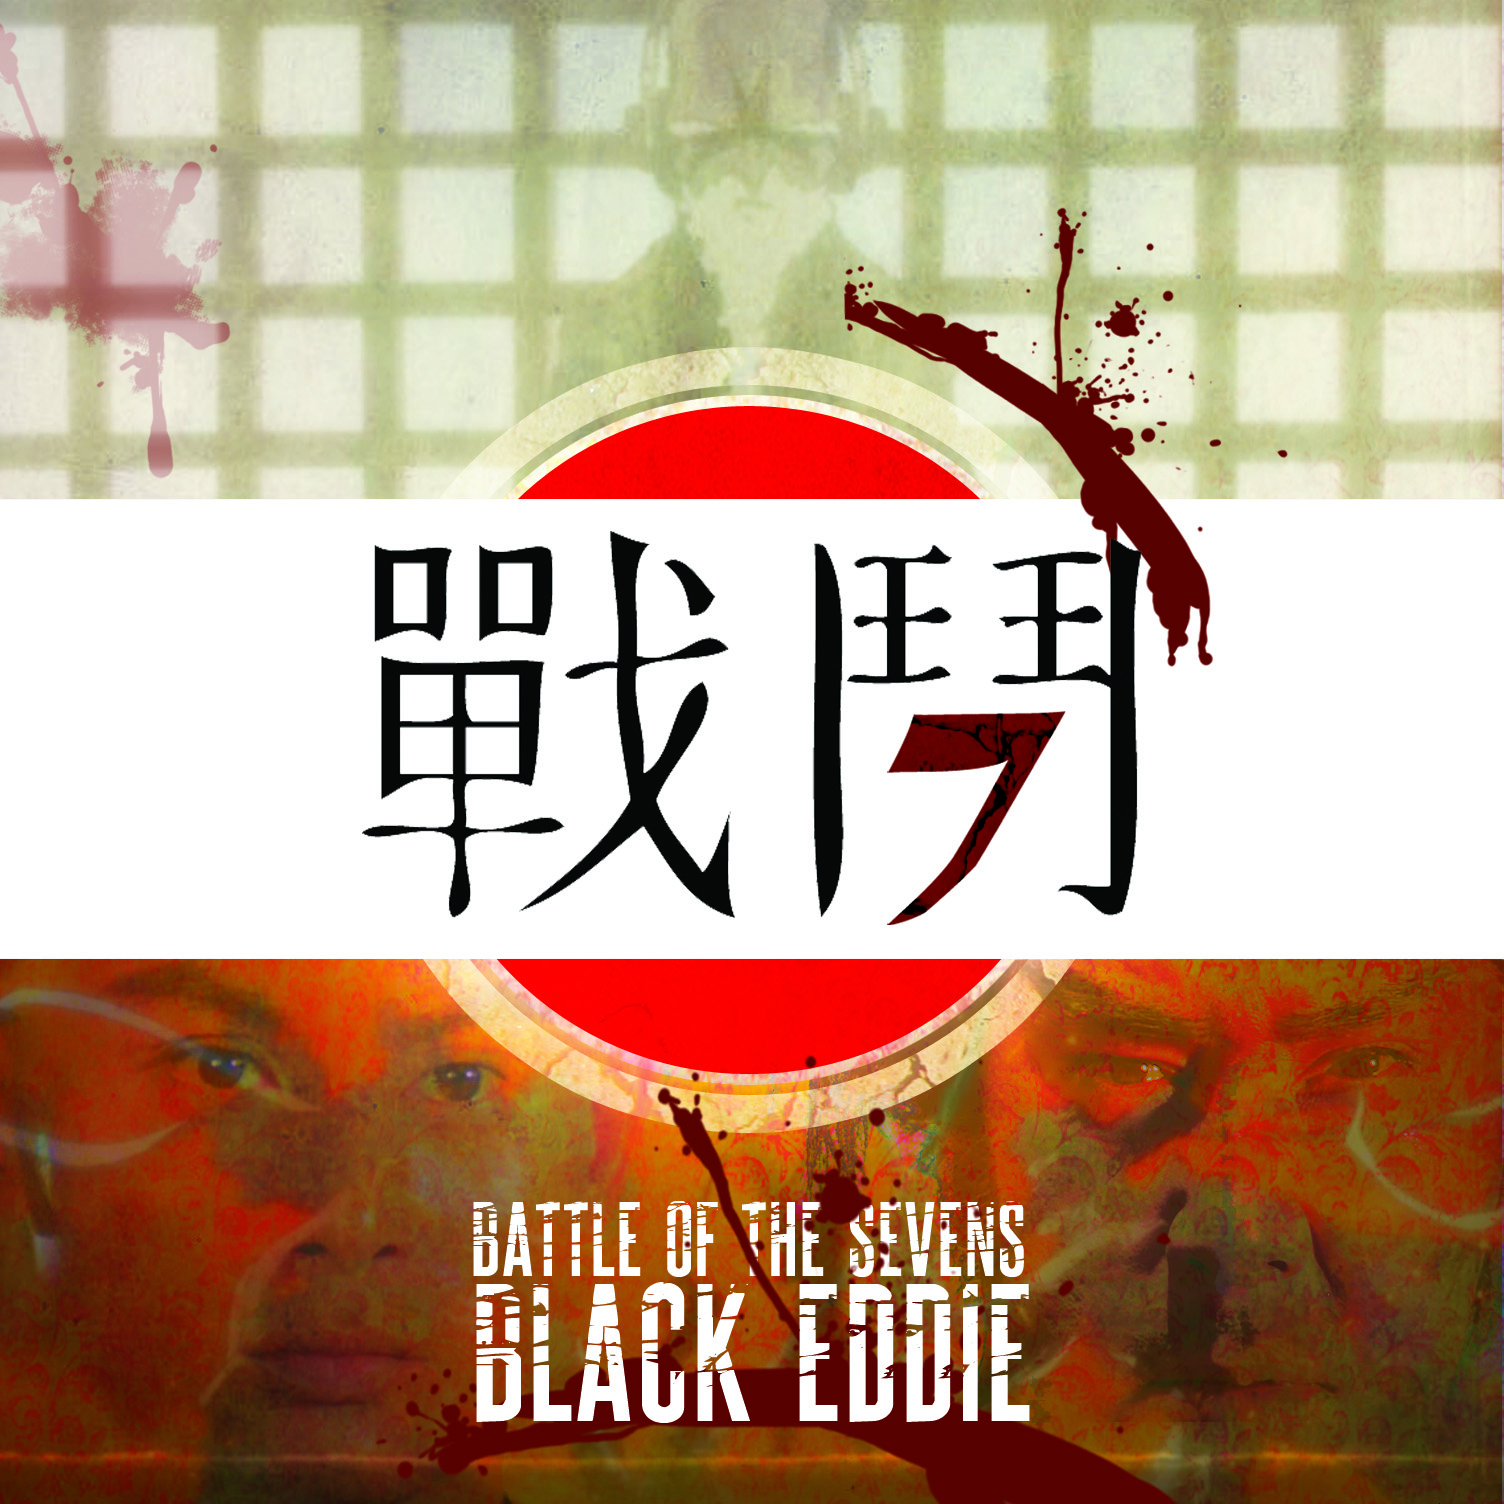 BDTB Premiere: Black Eddie - "Battle of the Sevens" (Release)